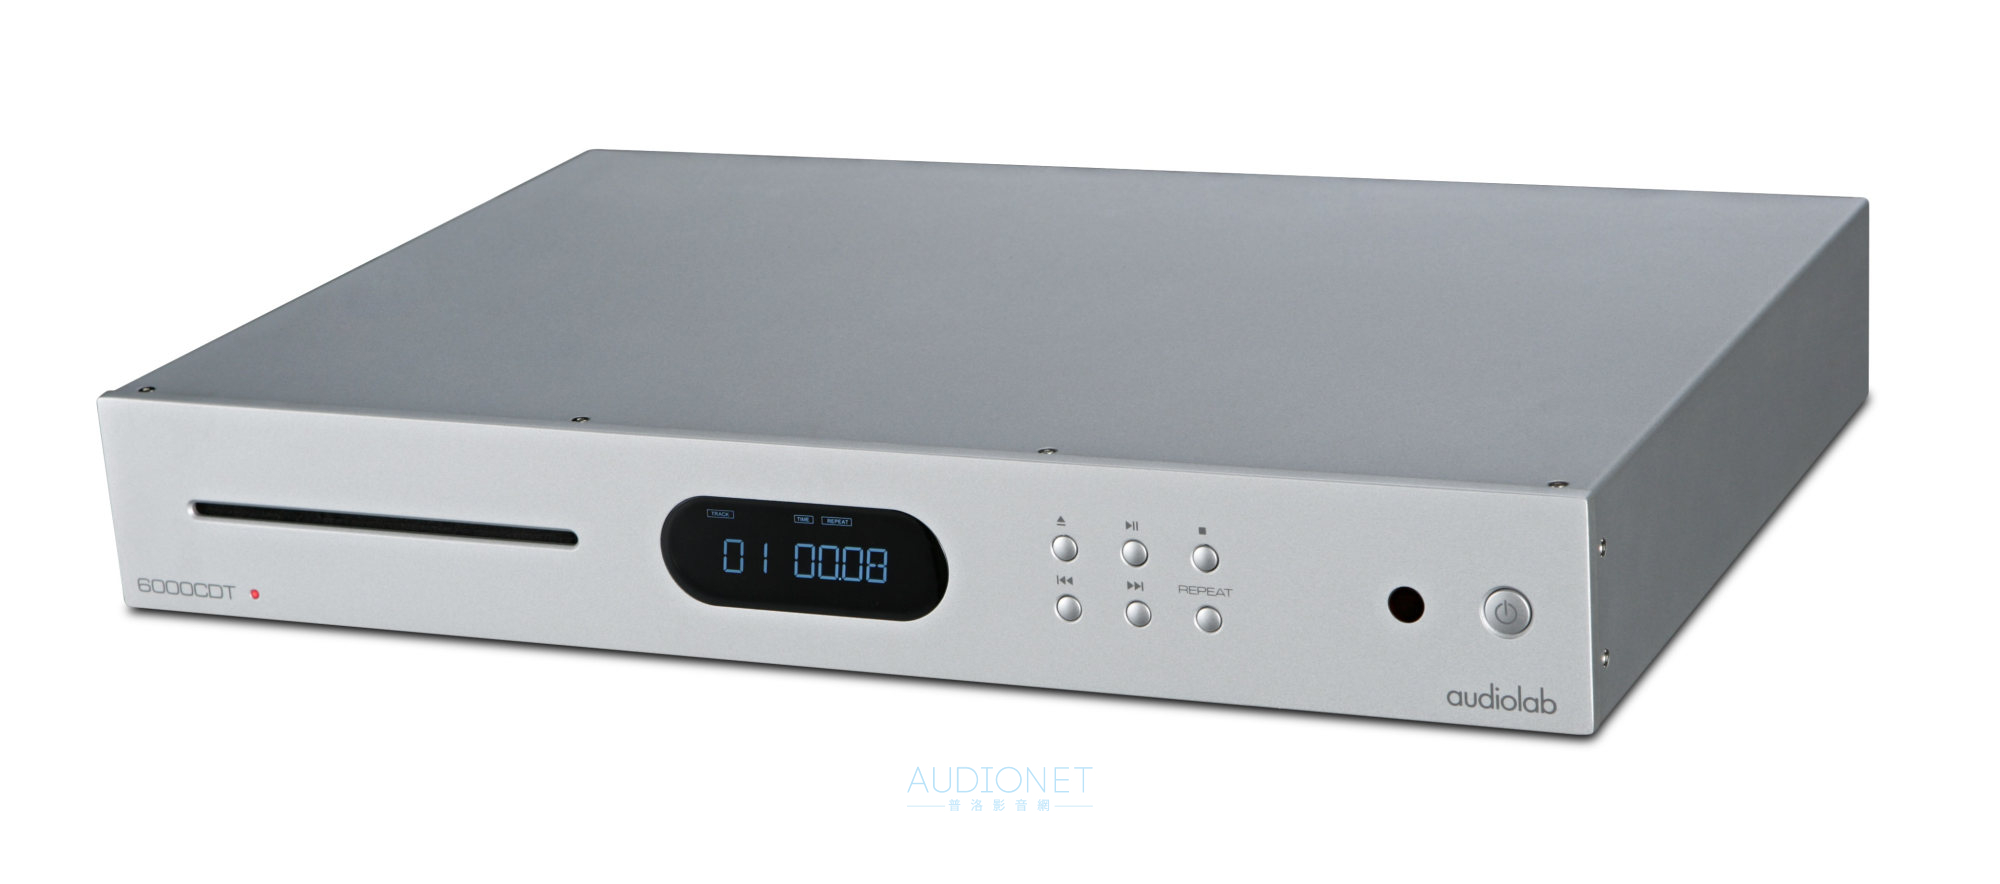 Audiolab 6000CDT入門級罕見高水準CD轉盤